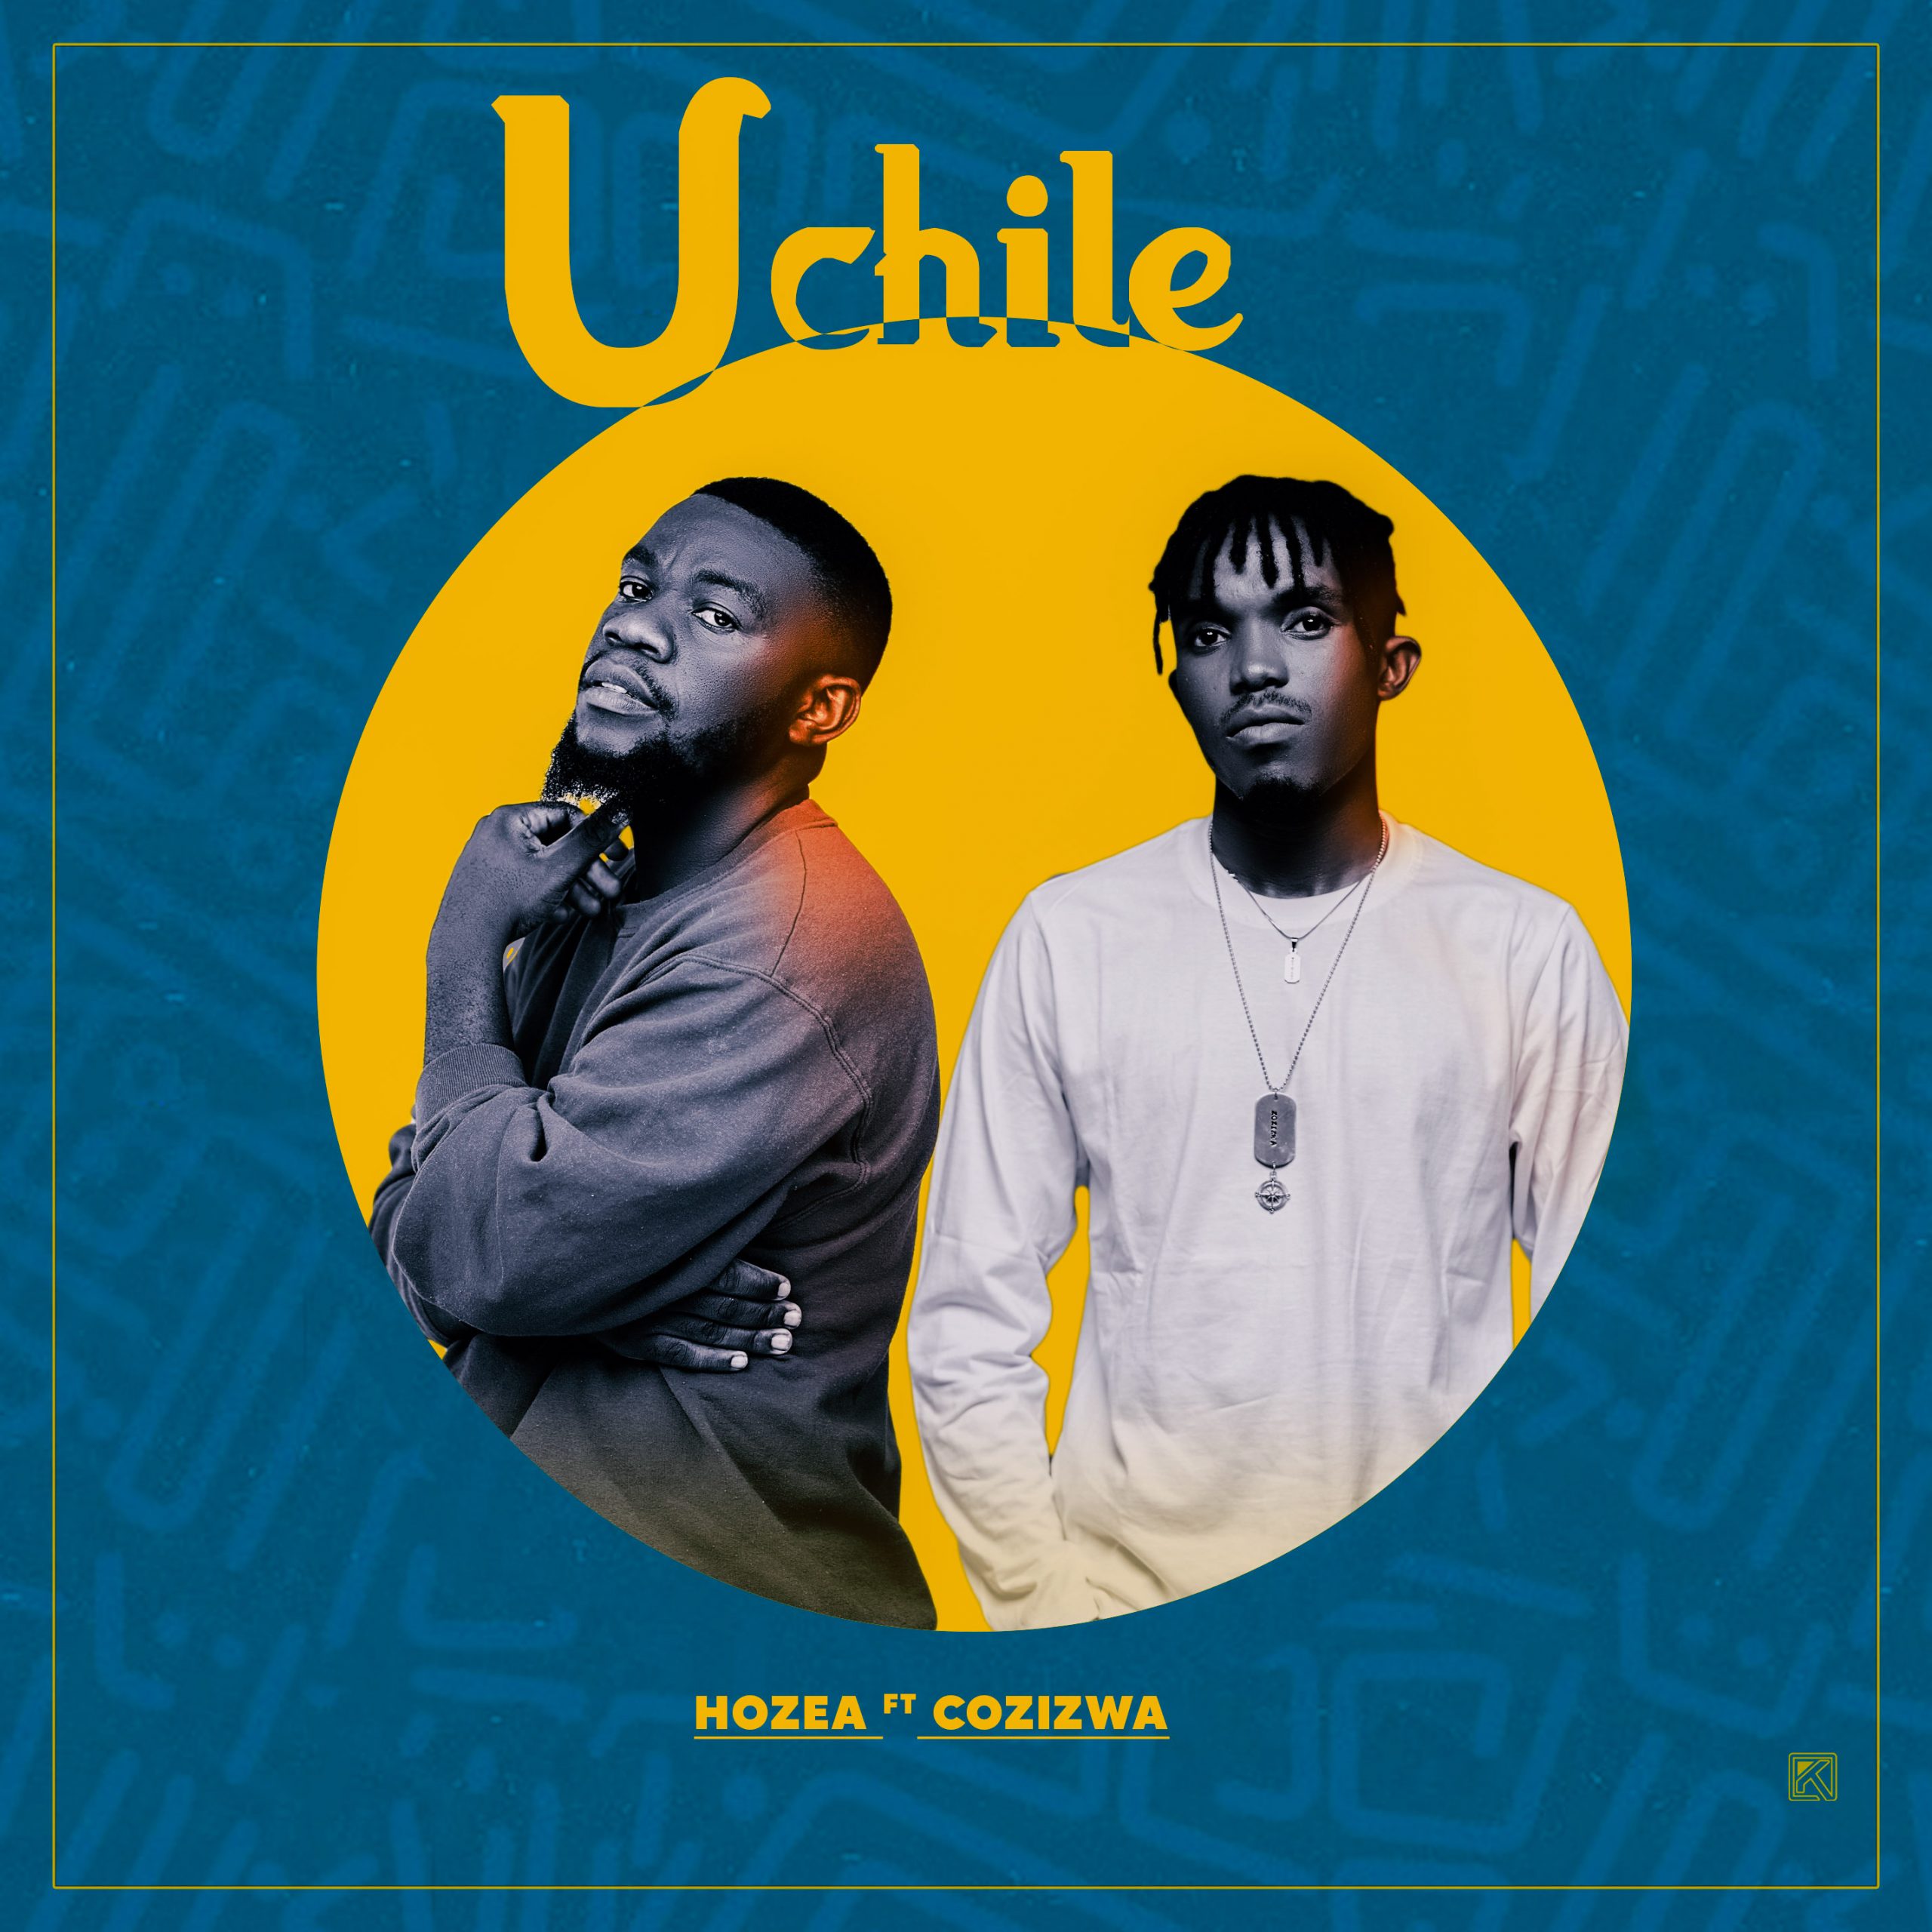 Uchile – Hozea ft Cozizwa